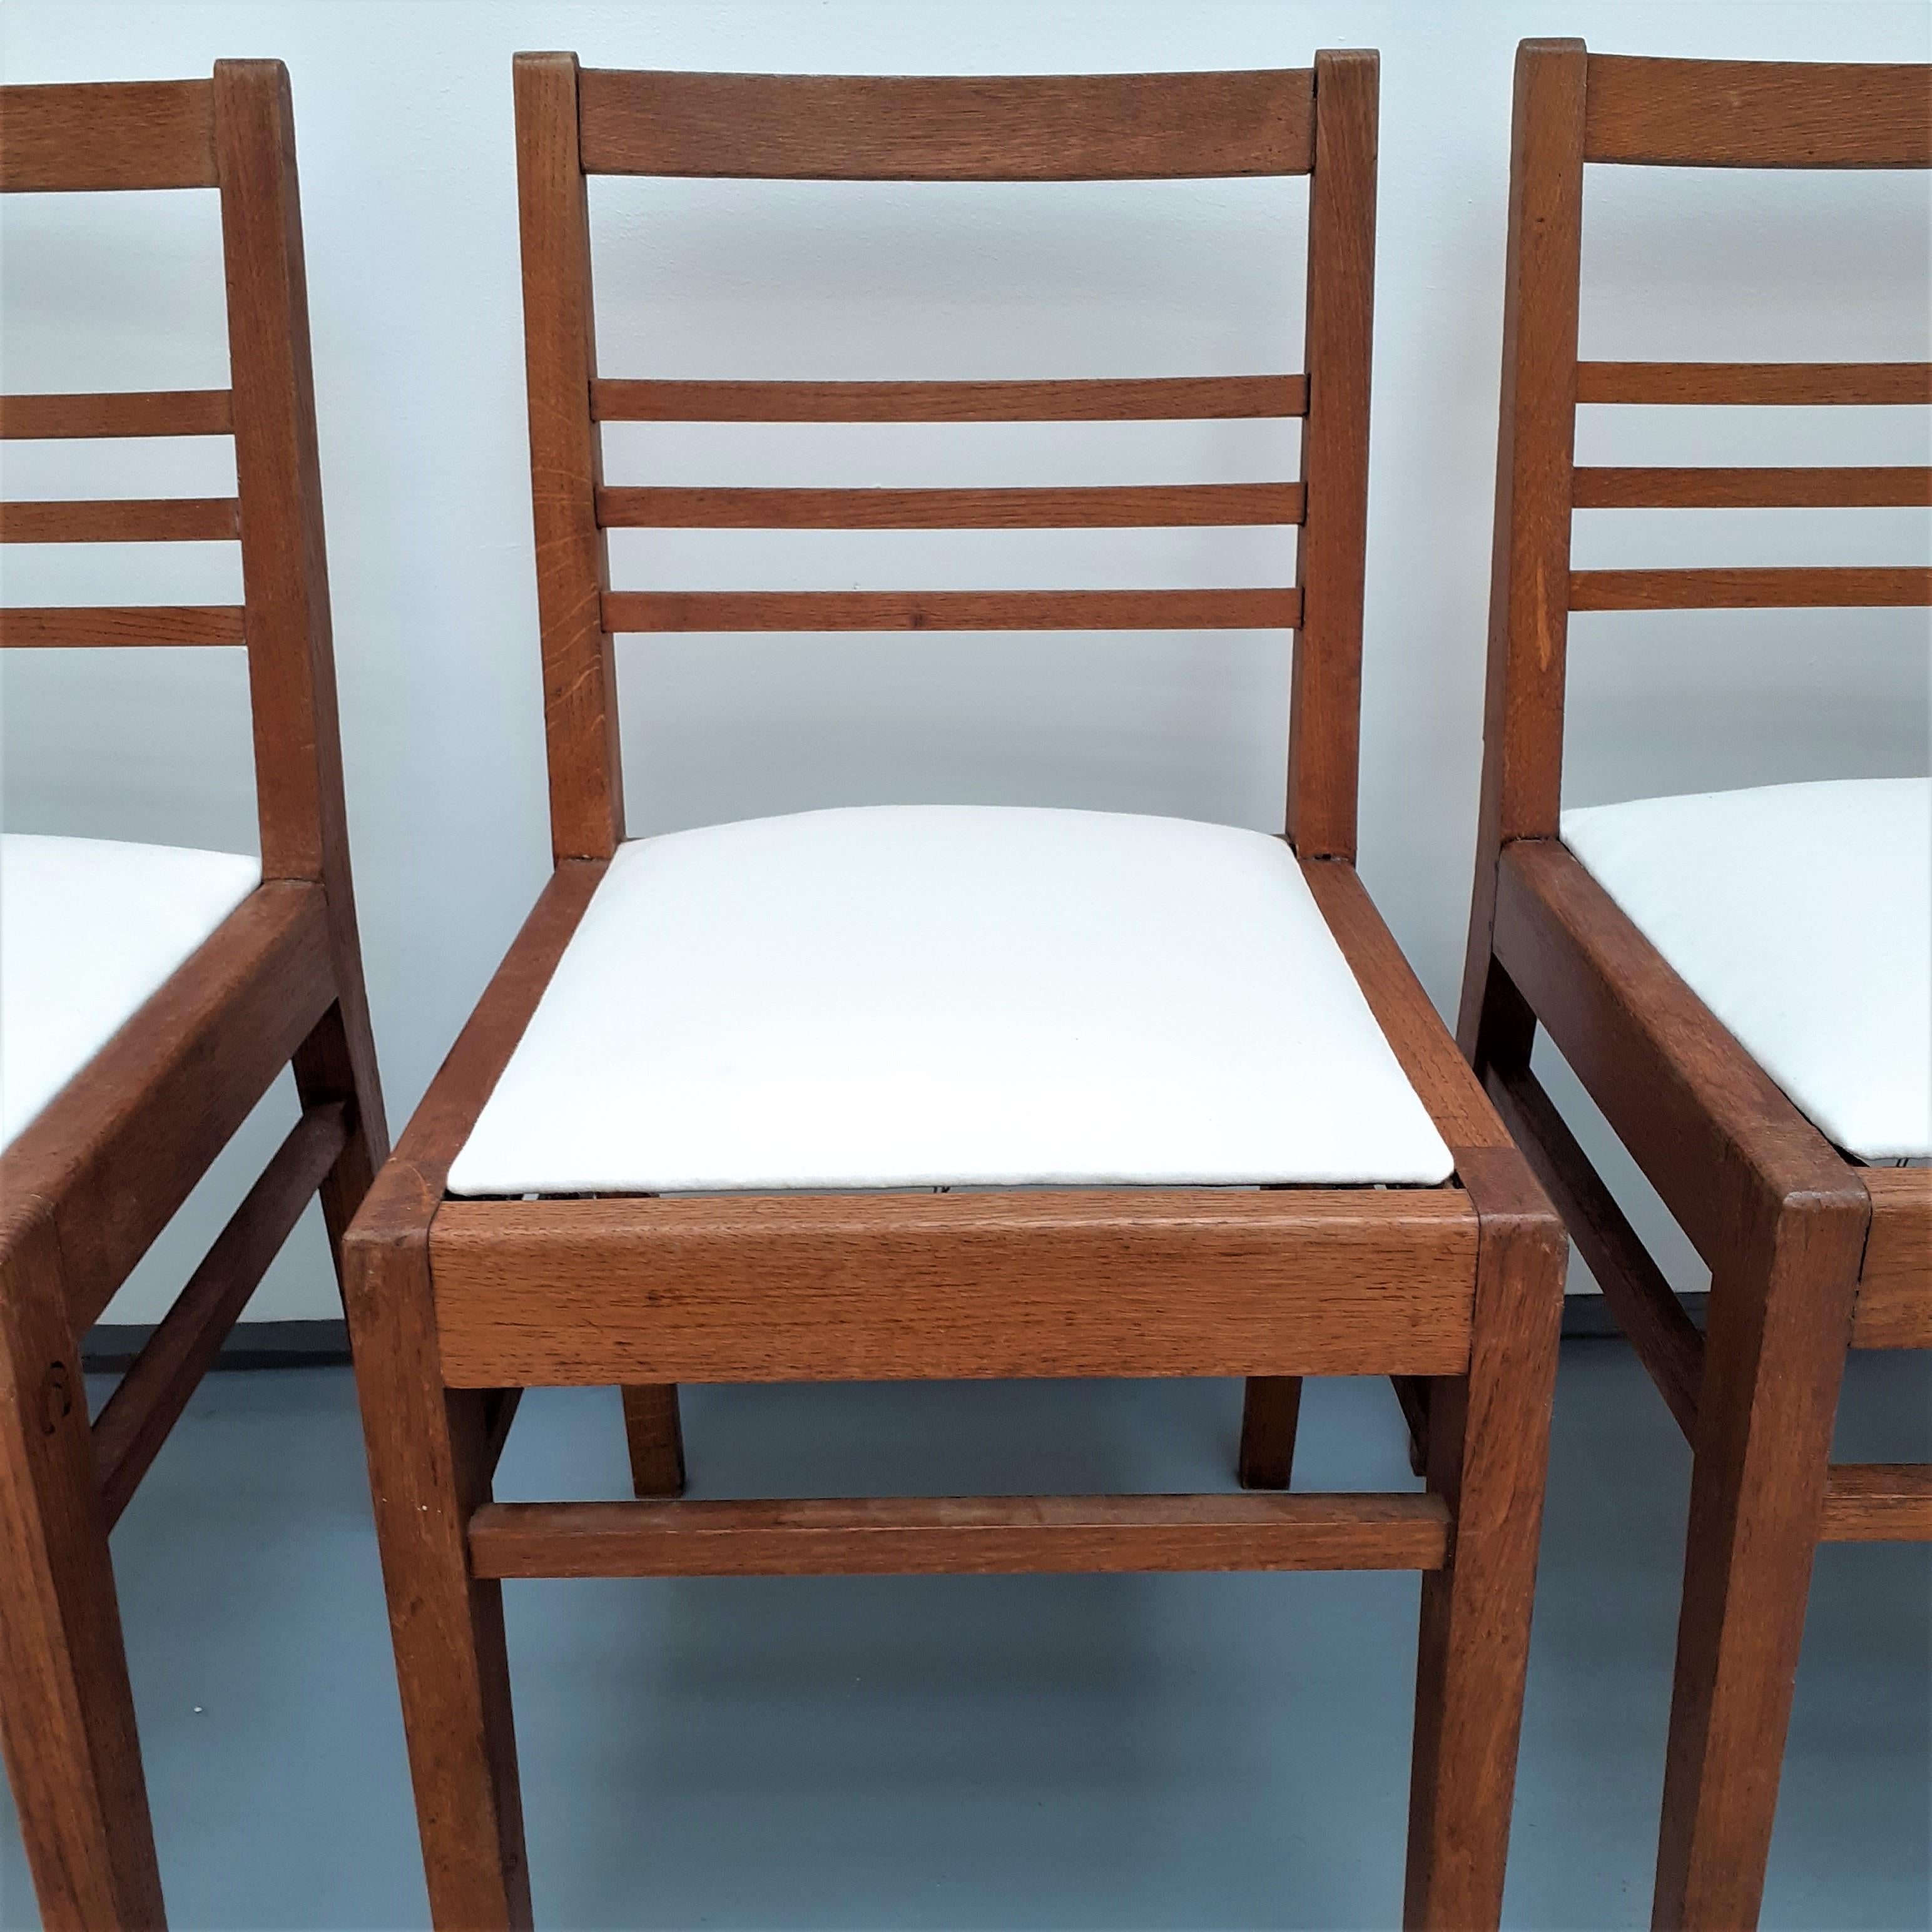 4 Stühle aus Eiche mit weißem Stoffsitz von René Gabriel, 1950er Jahre

René Gabriel (1899 - 1950) ist ein Wegbereiter des französischen Industriedesigns. Er war einer der Ersten, der bereits in den 1930er Jahren kostengünstige Massenmöbel